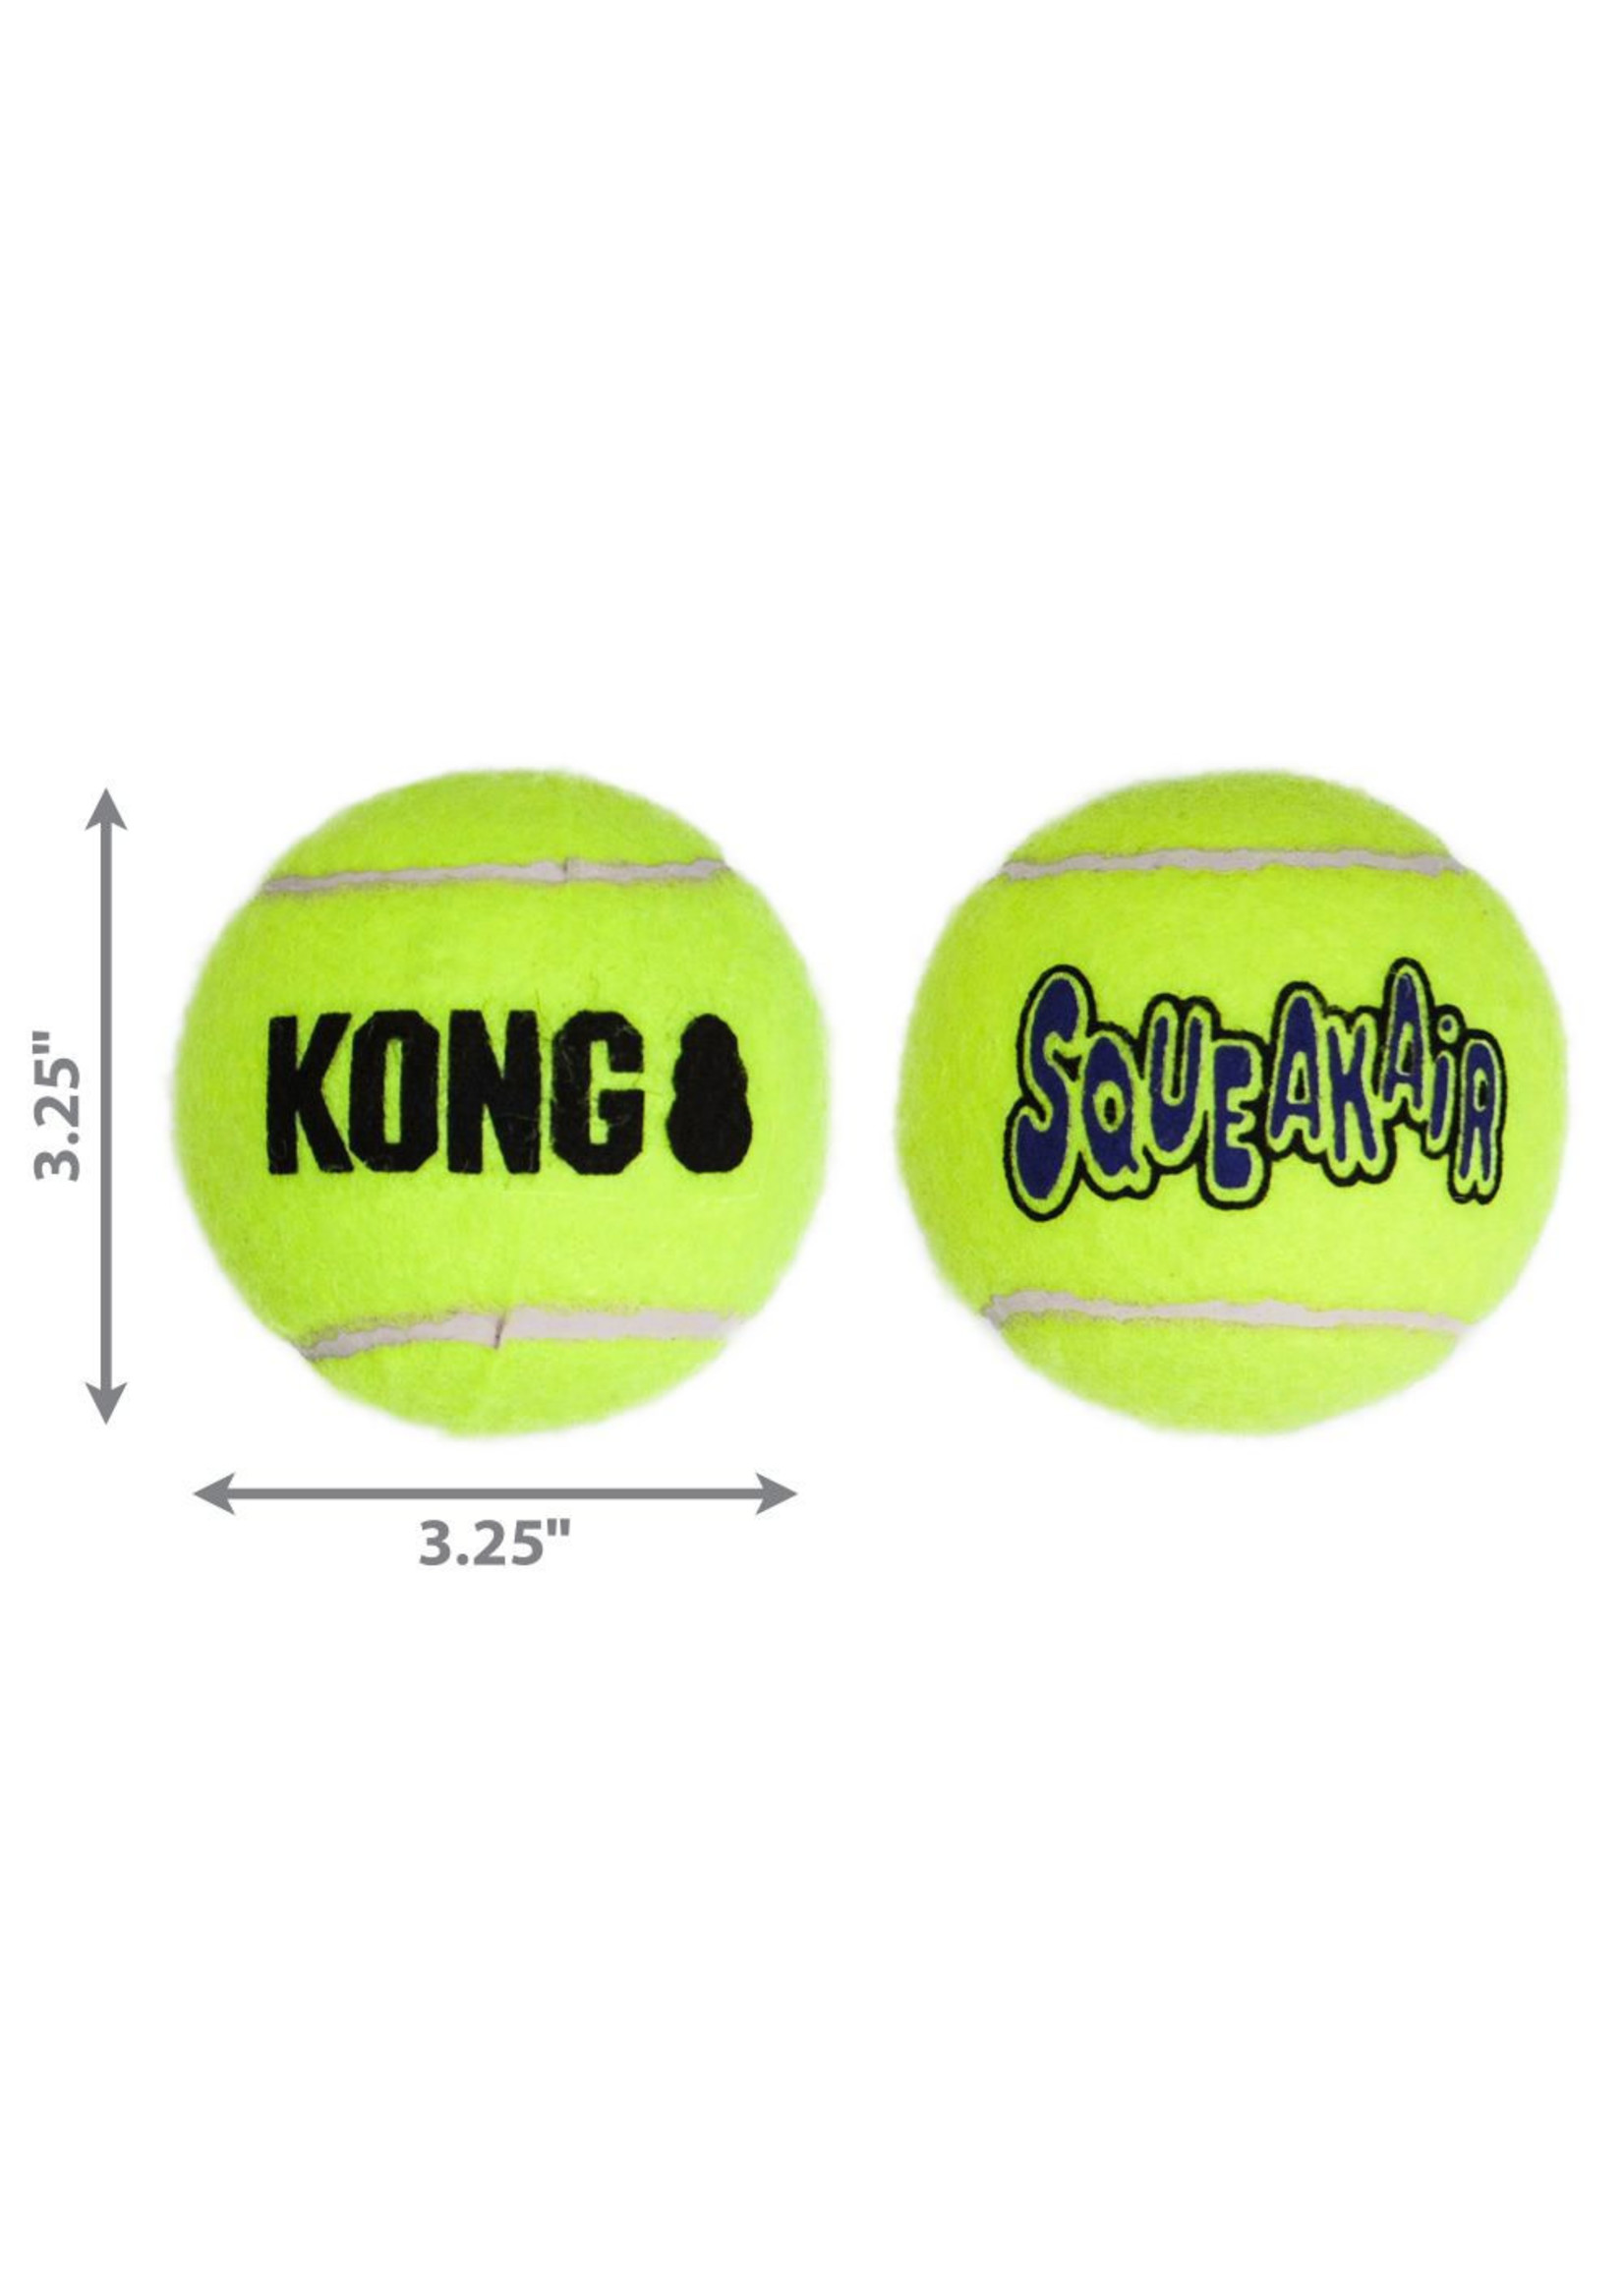 Kong Kong Air Dog Squeaker Ball Large